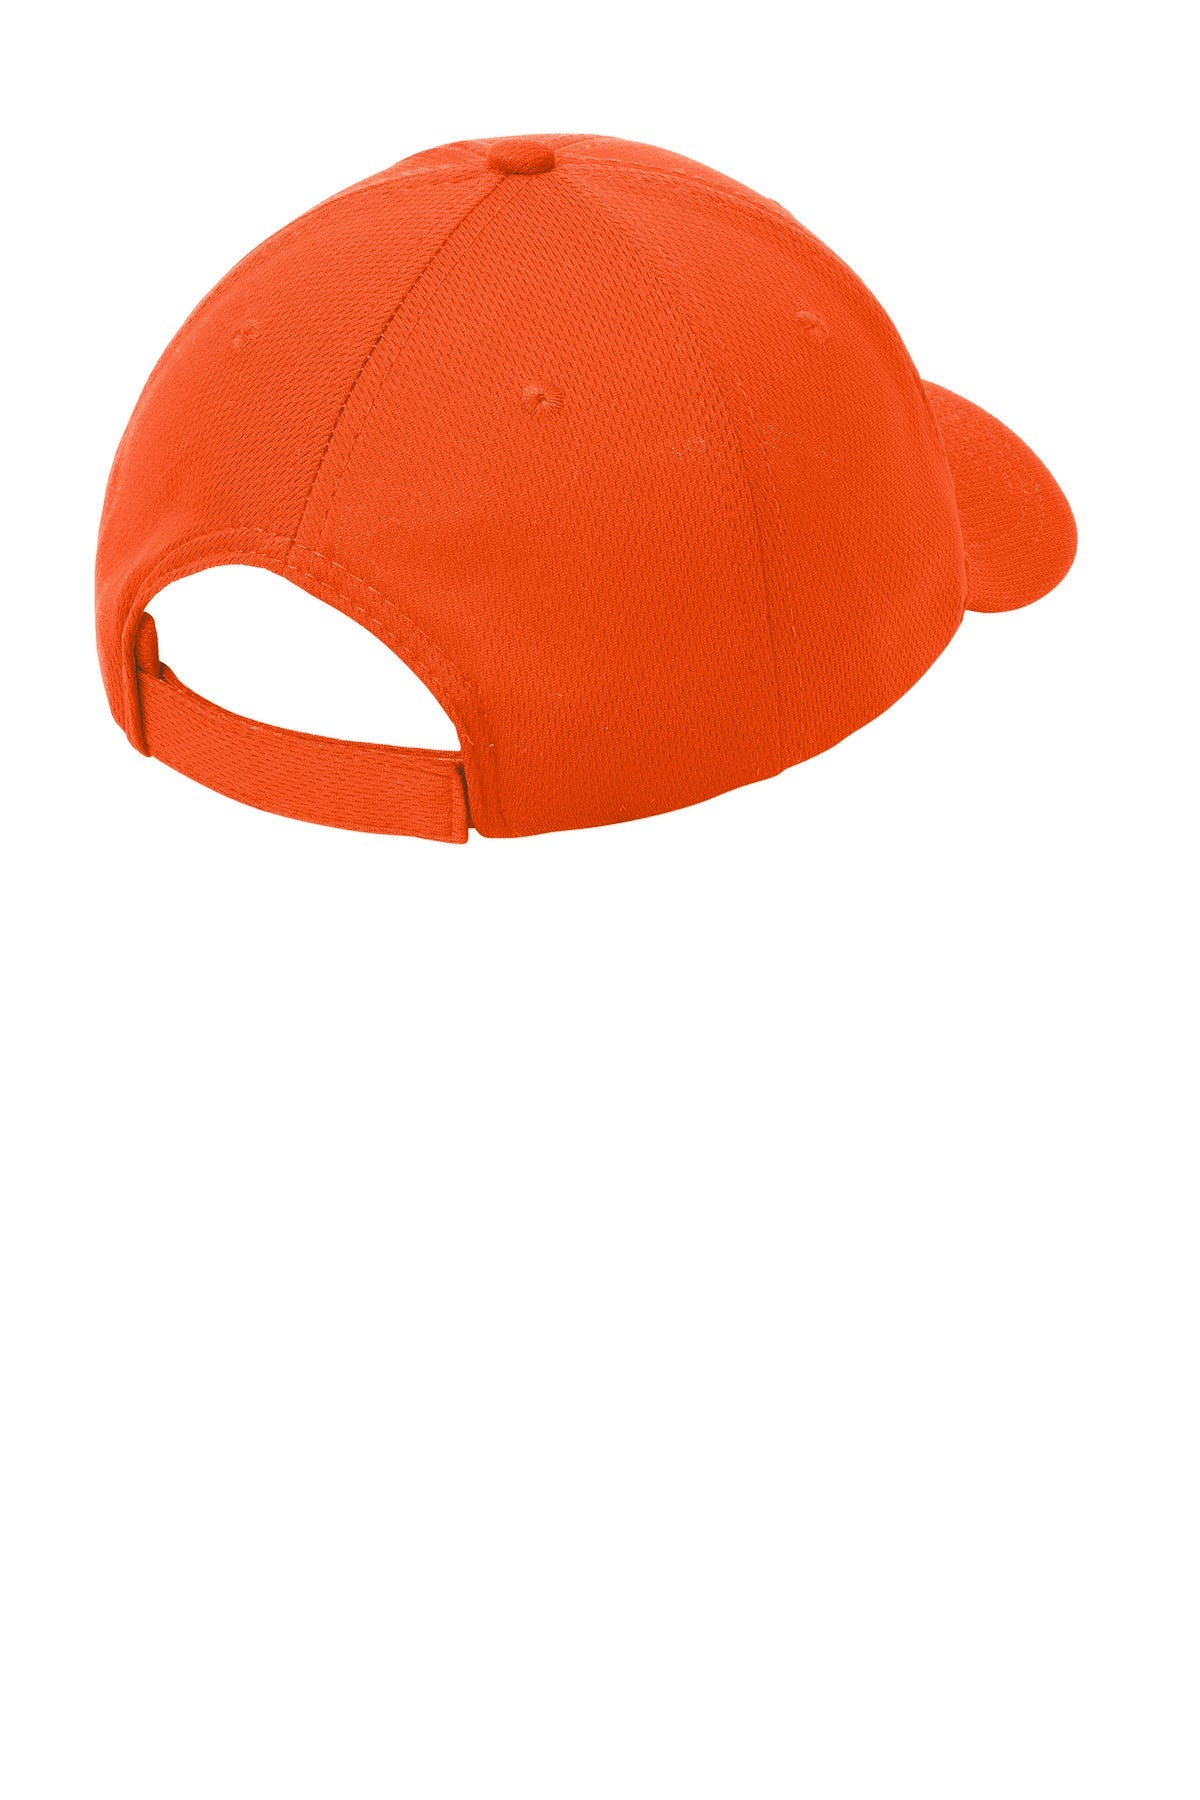 Sport-Tek PosiCharge RacerMesh Custom Caps, Neon Orange